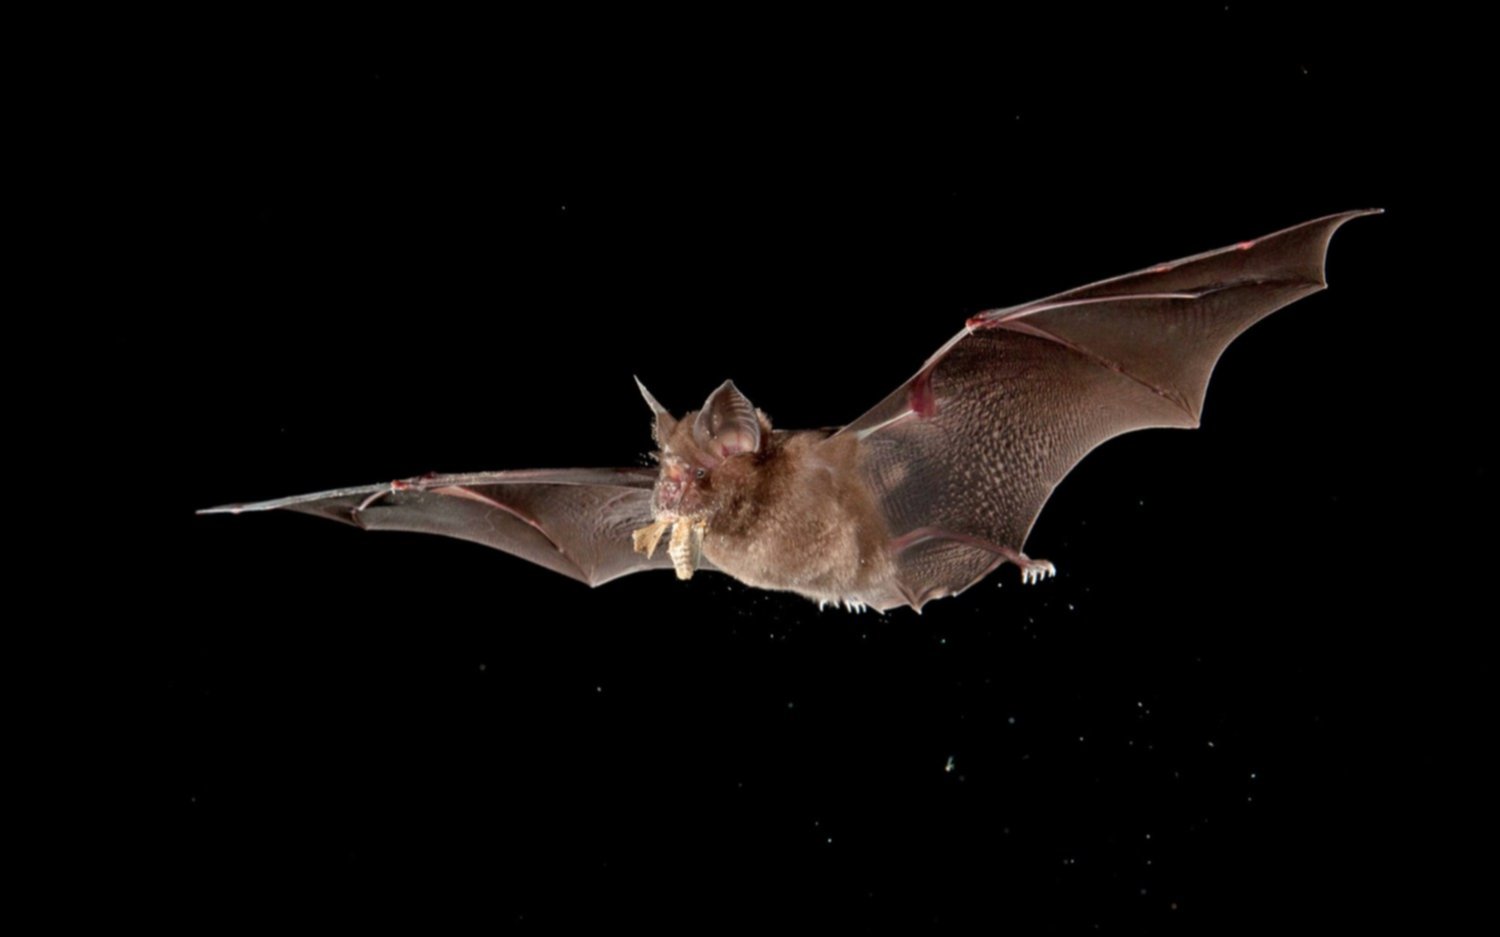 Revelan que un laboratorio de Wuhan planeaba infectar murciélagos para estudiar riesgos en humanos